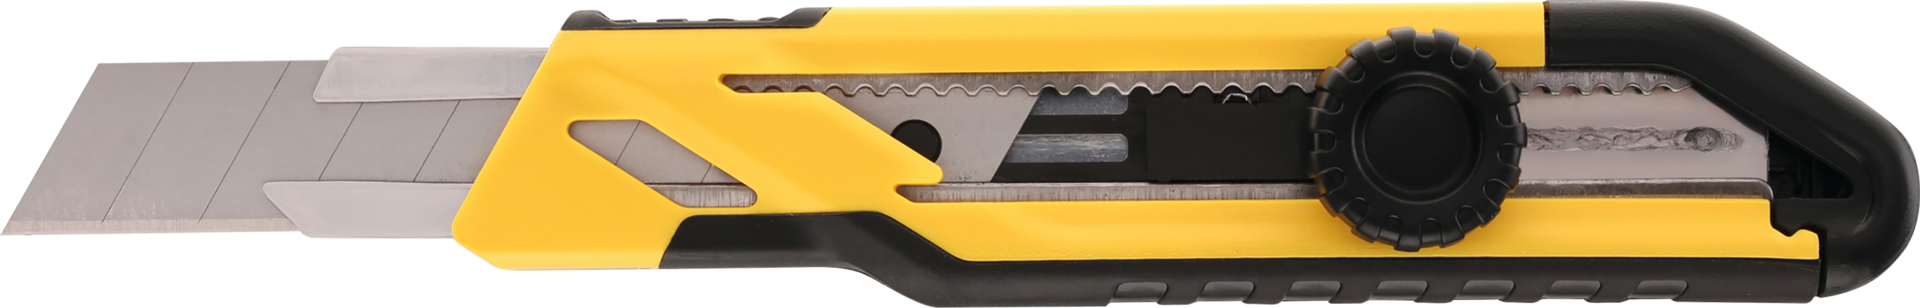 Cuttermesser Abbrechklingen 18mm Comfort Cut inkl. 3 Klingen L165mm